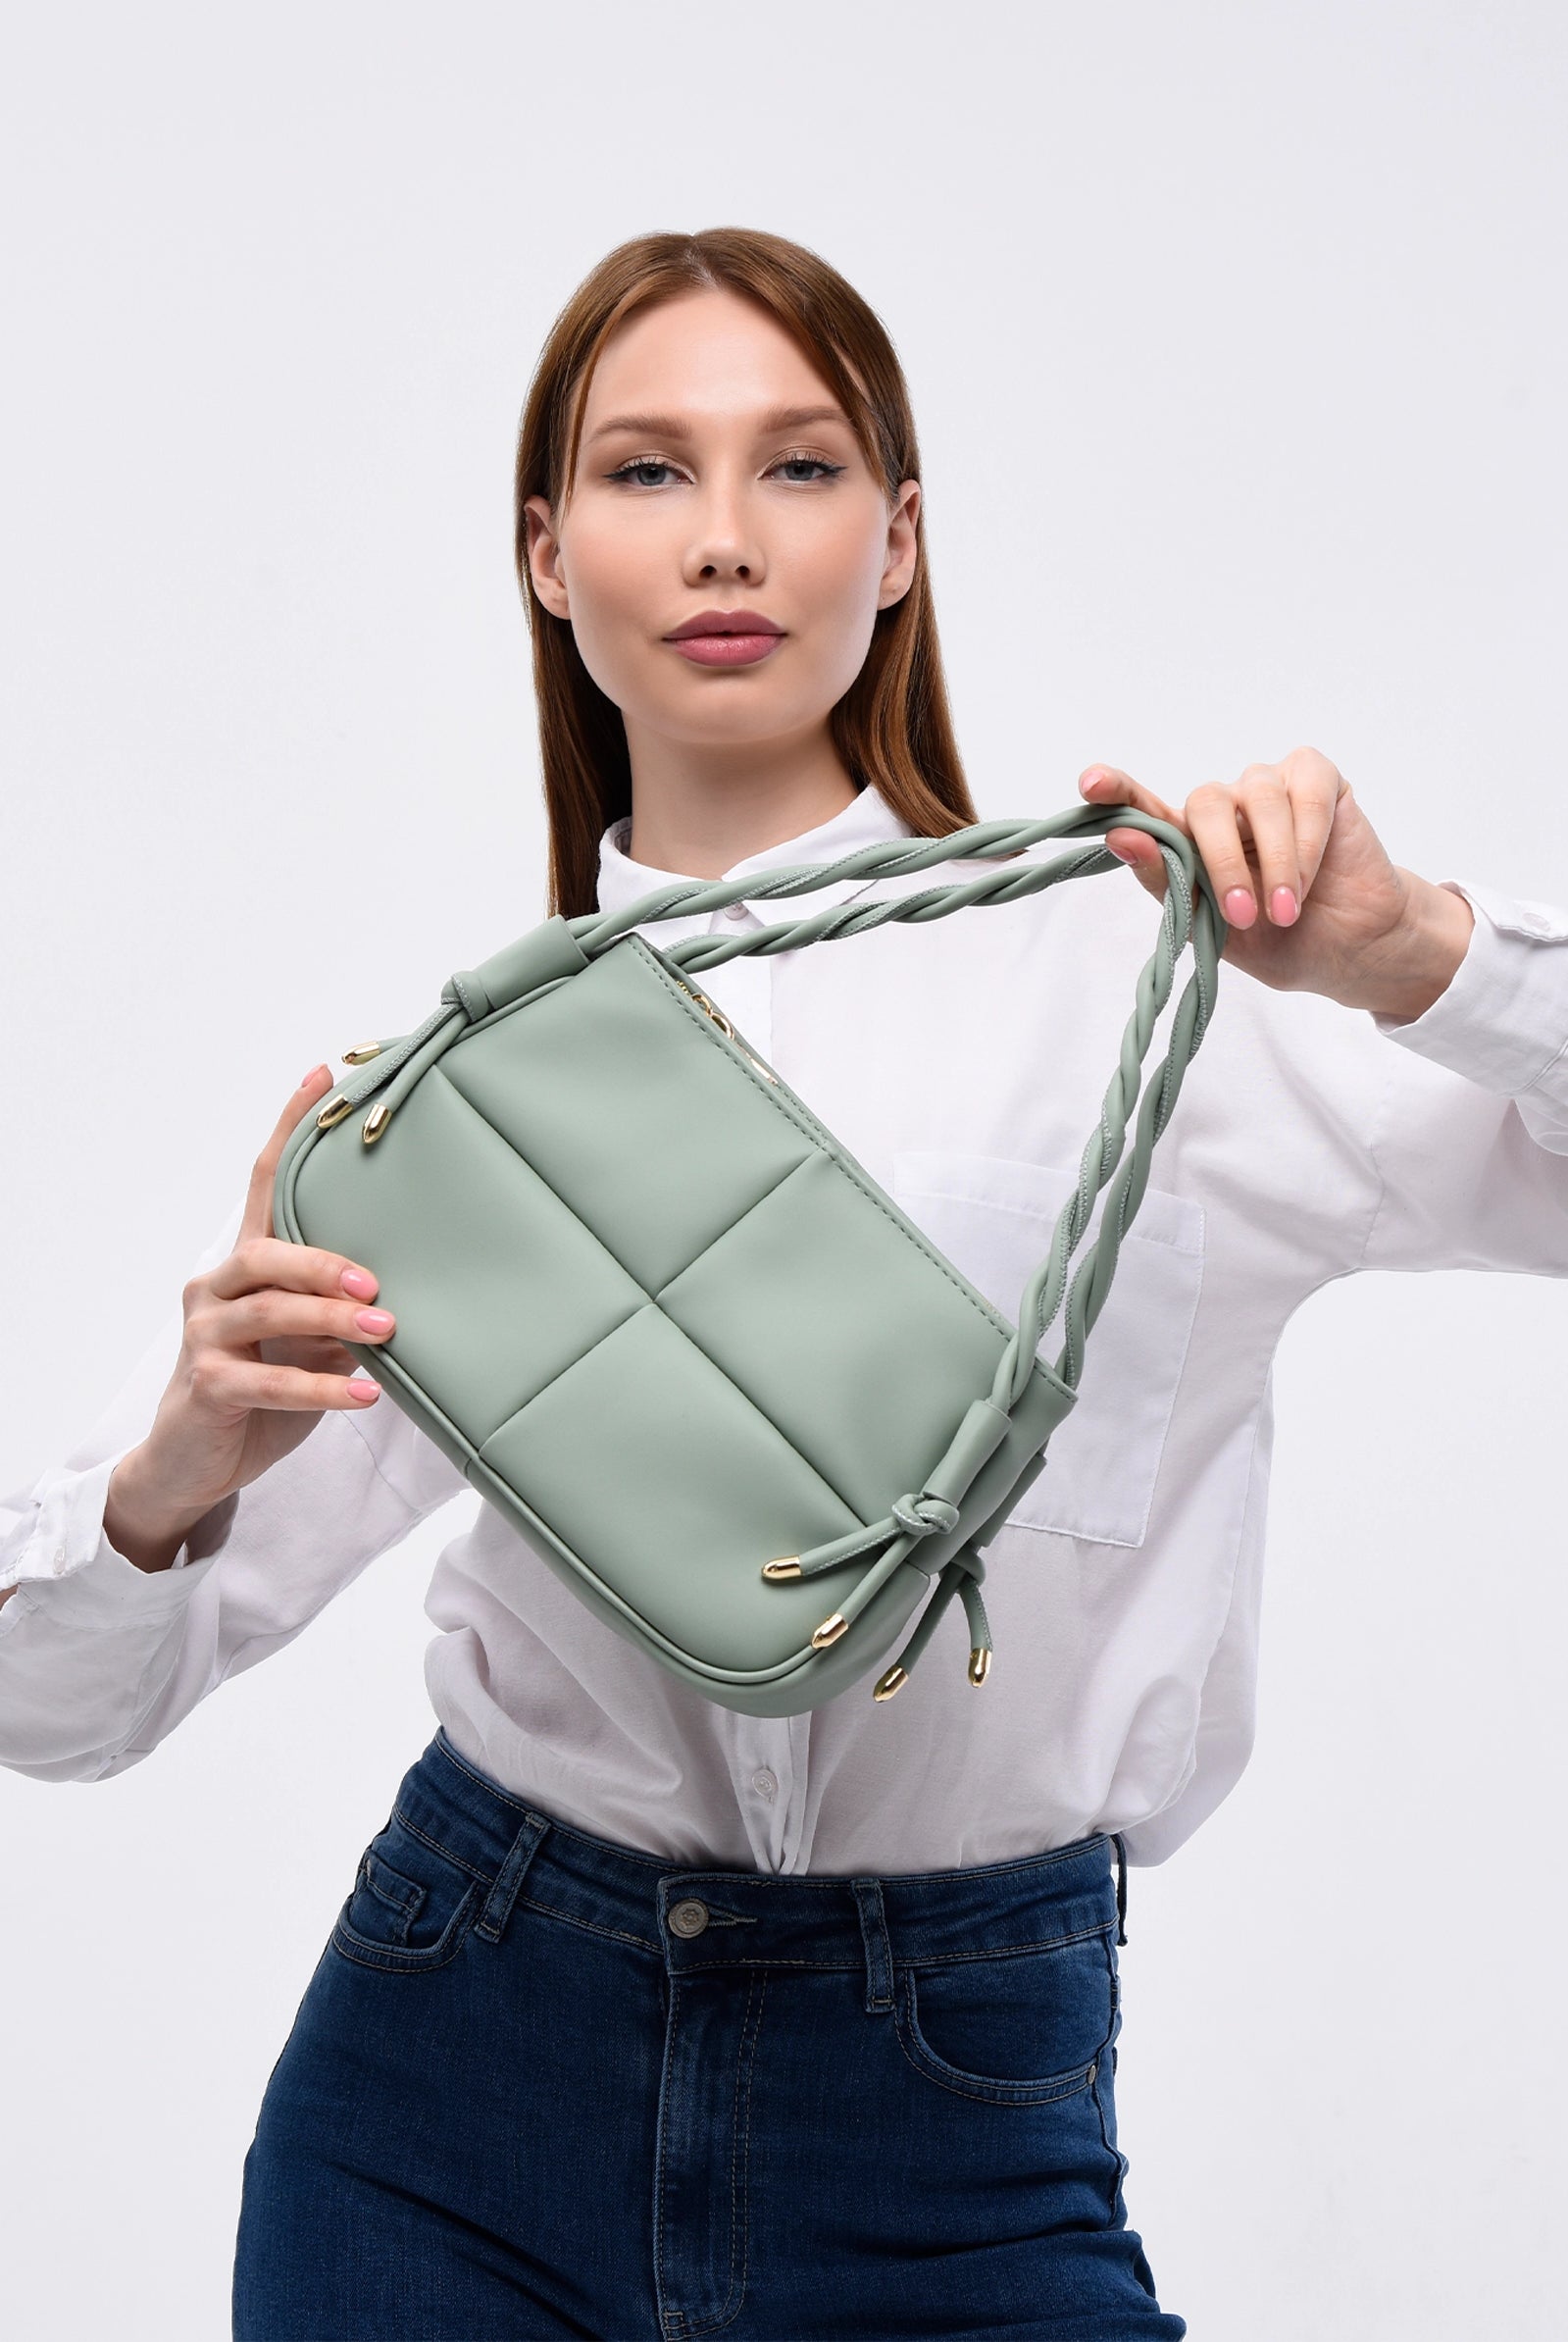 mint green bag for women